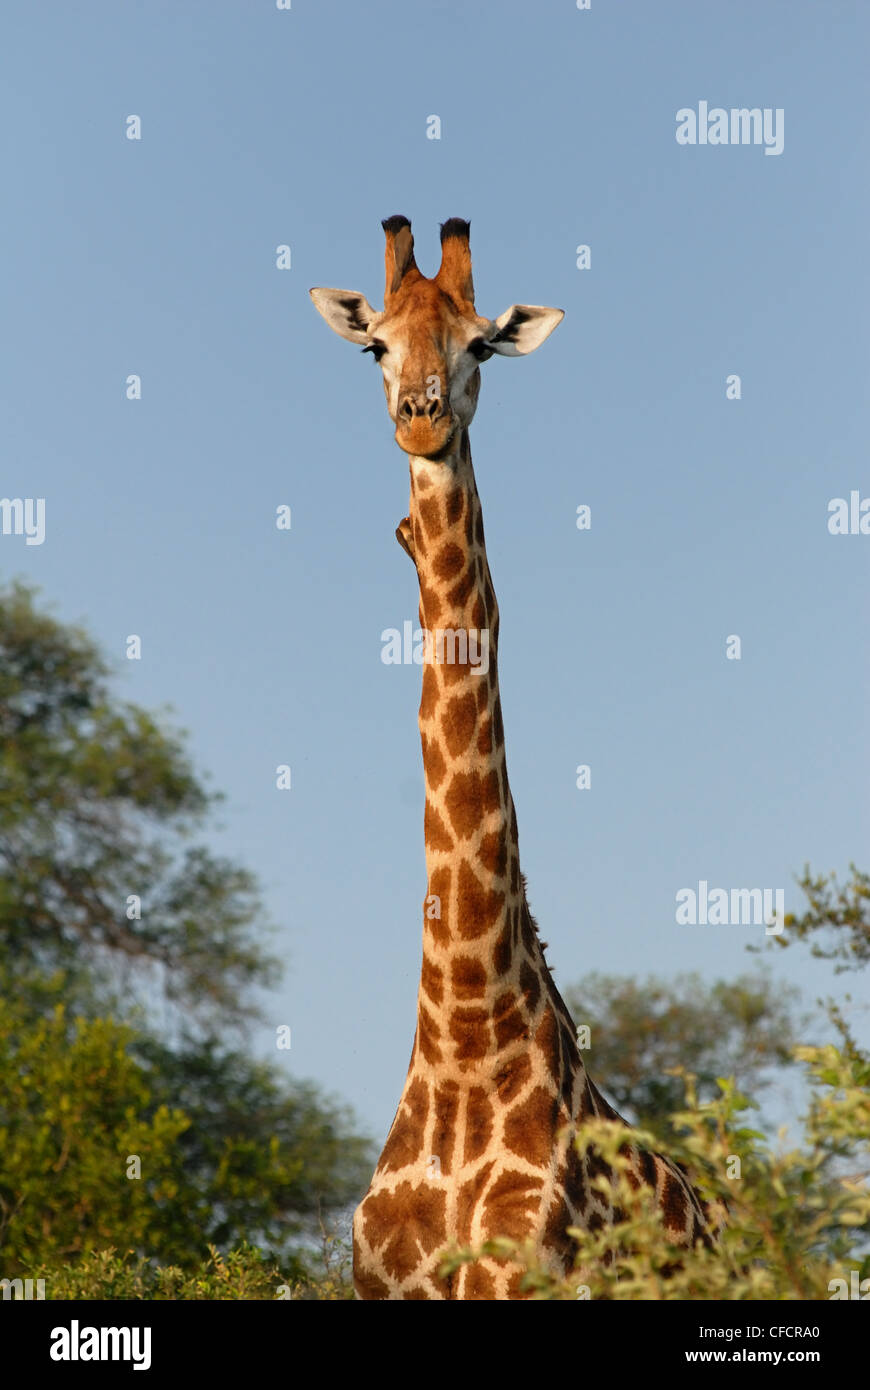 Profil de girafe mâle Banque D'Images